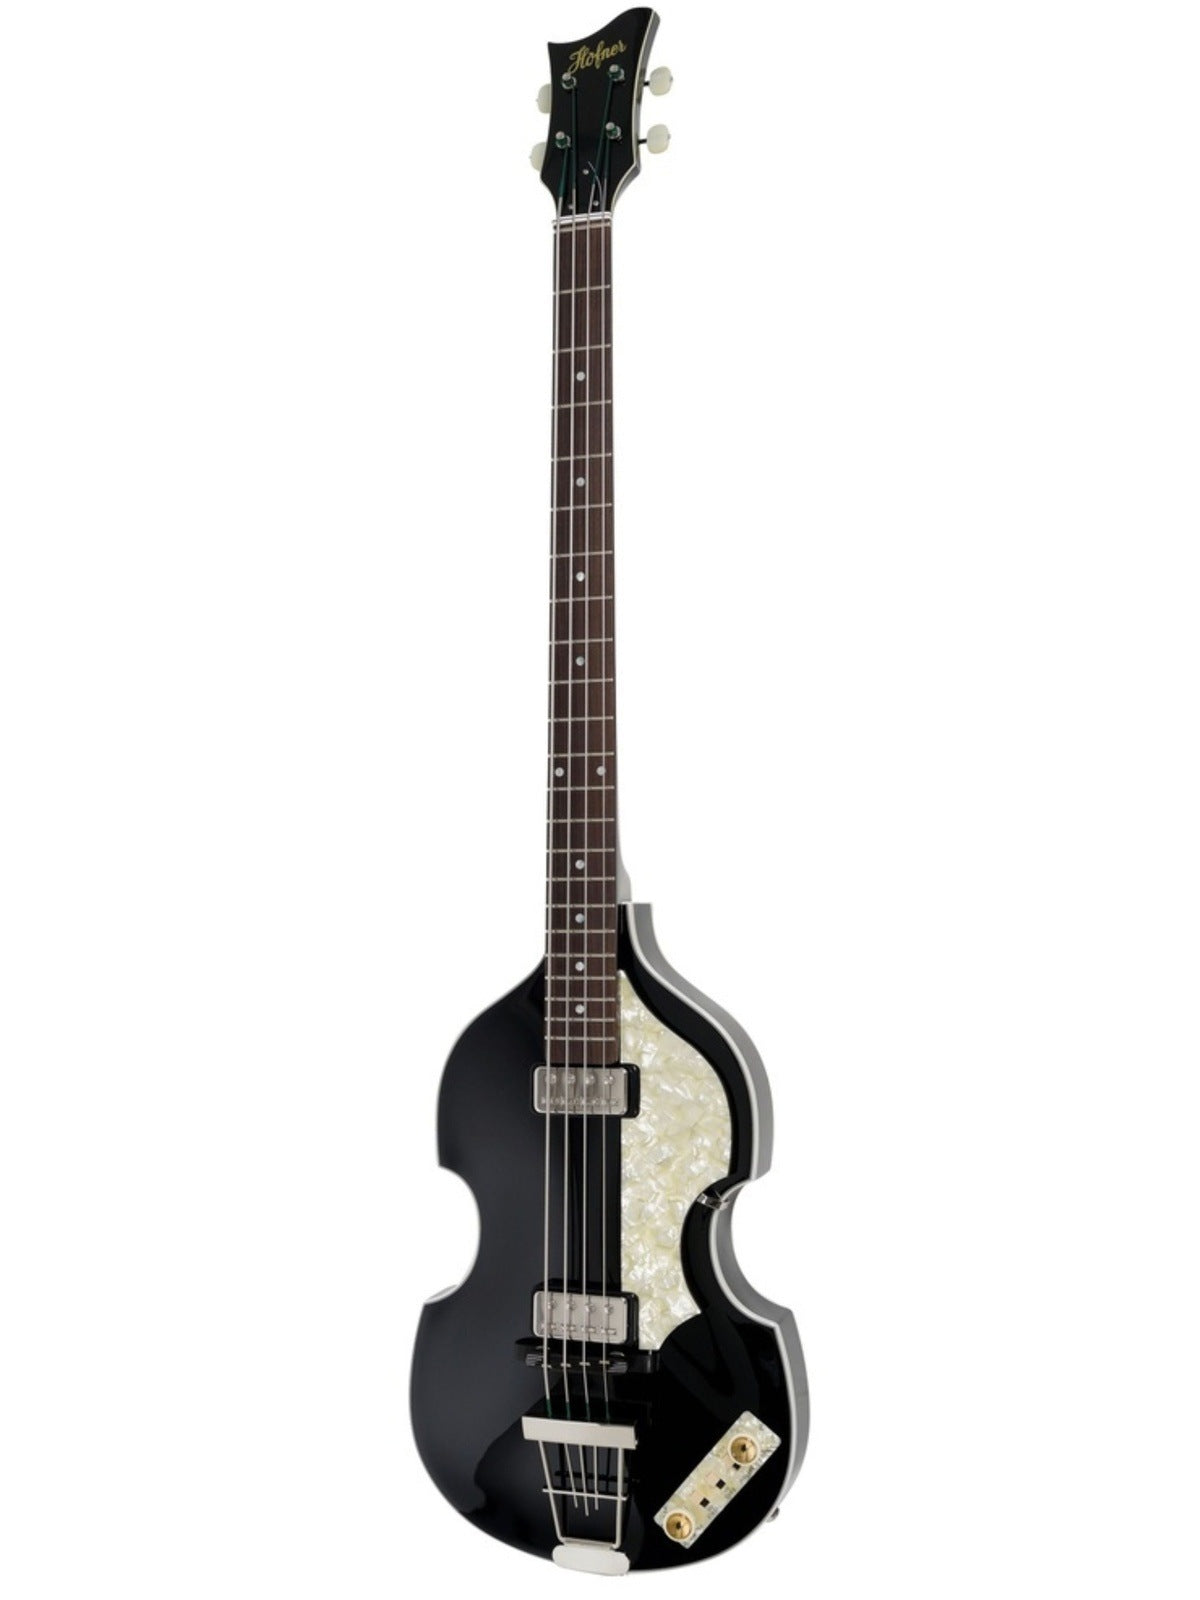 Höfner 500/I '63 Re-Issue Artist Violin Bass, Black